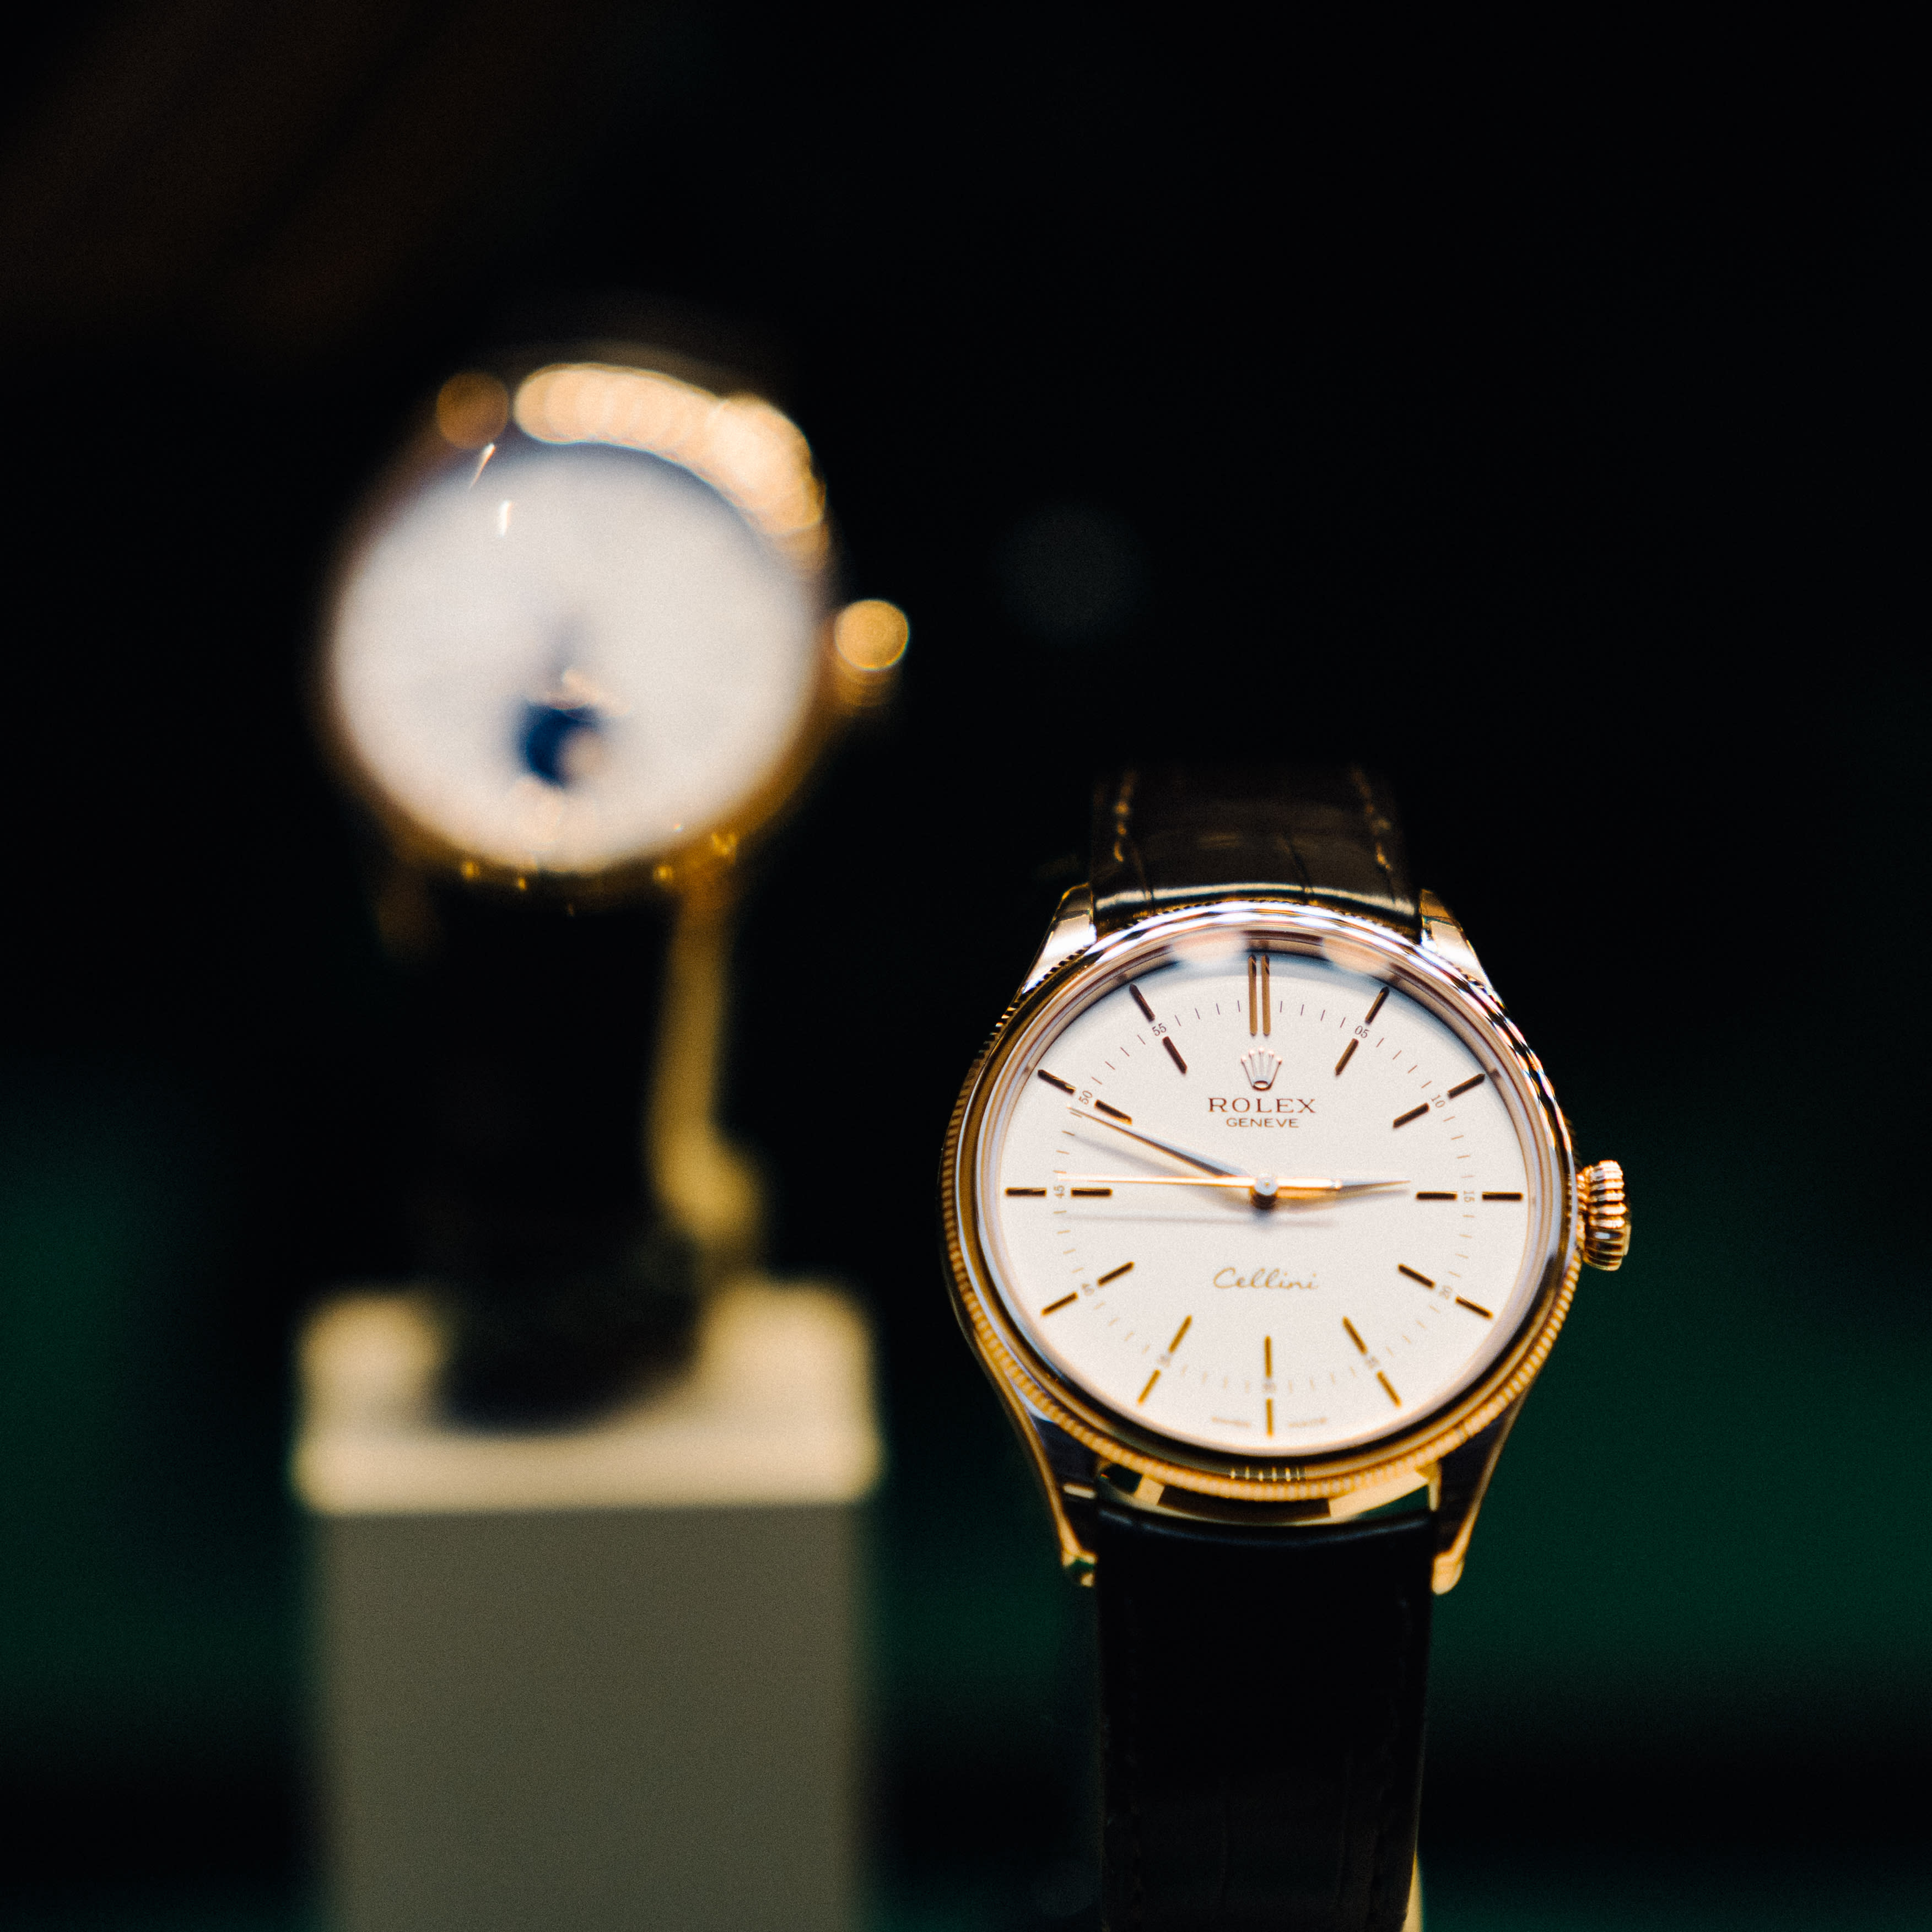 Verschlüsselungsbetrüger stehlen Rolex-Uhren im Wert von 440,000 Euro